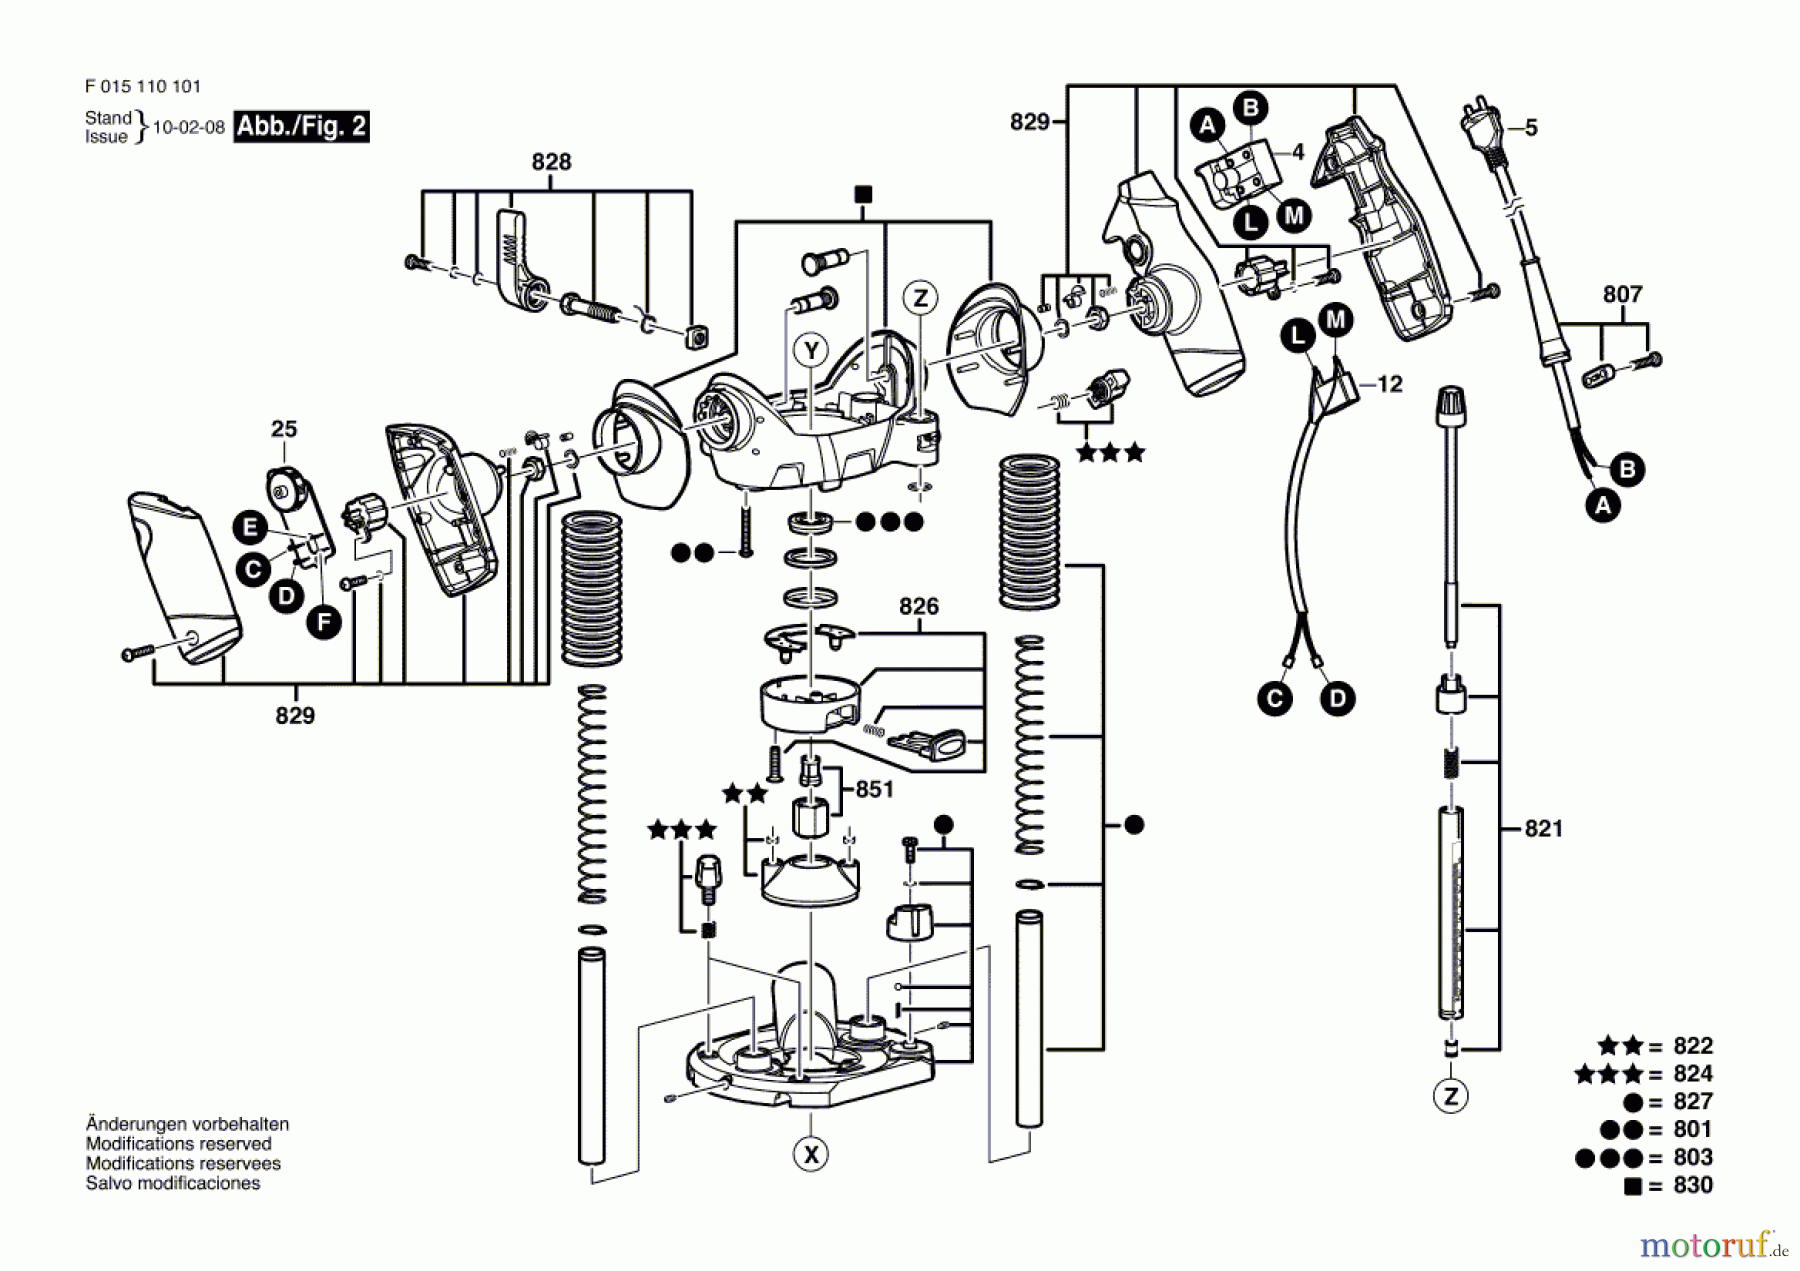  Bosch Werkzeug Oberfräse 1101 Seite 2